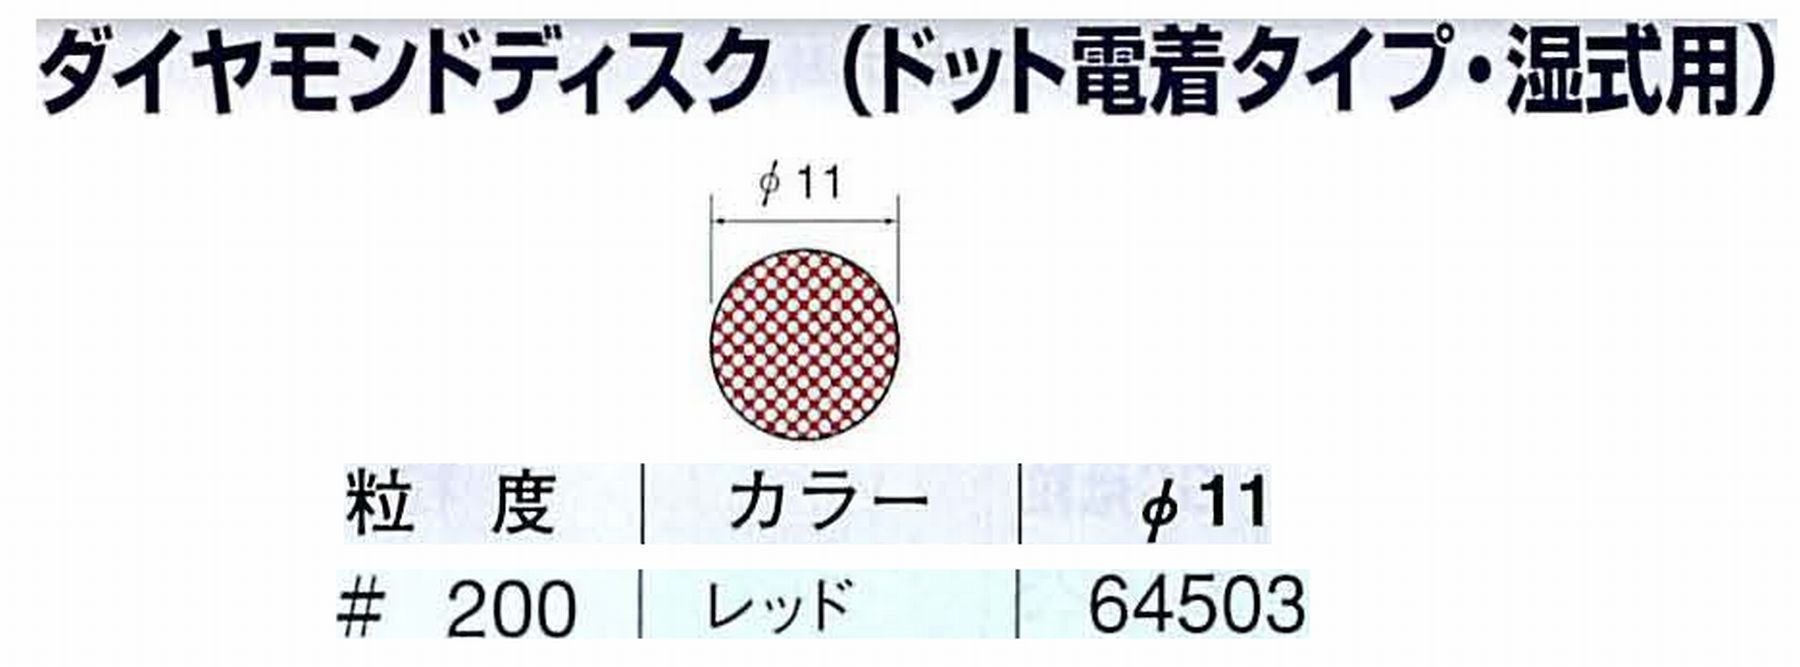 ナカニシ/NAKANISHI アングルグラインダ(電動・エアー) アングルアタッチメント専用工具 ダイヤモンドディスク(ドット電着タイプ・湿式用) 64503